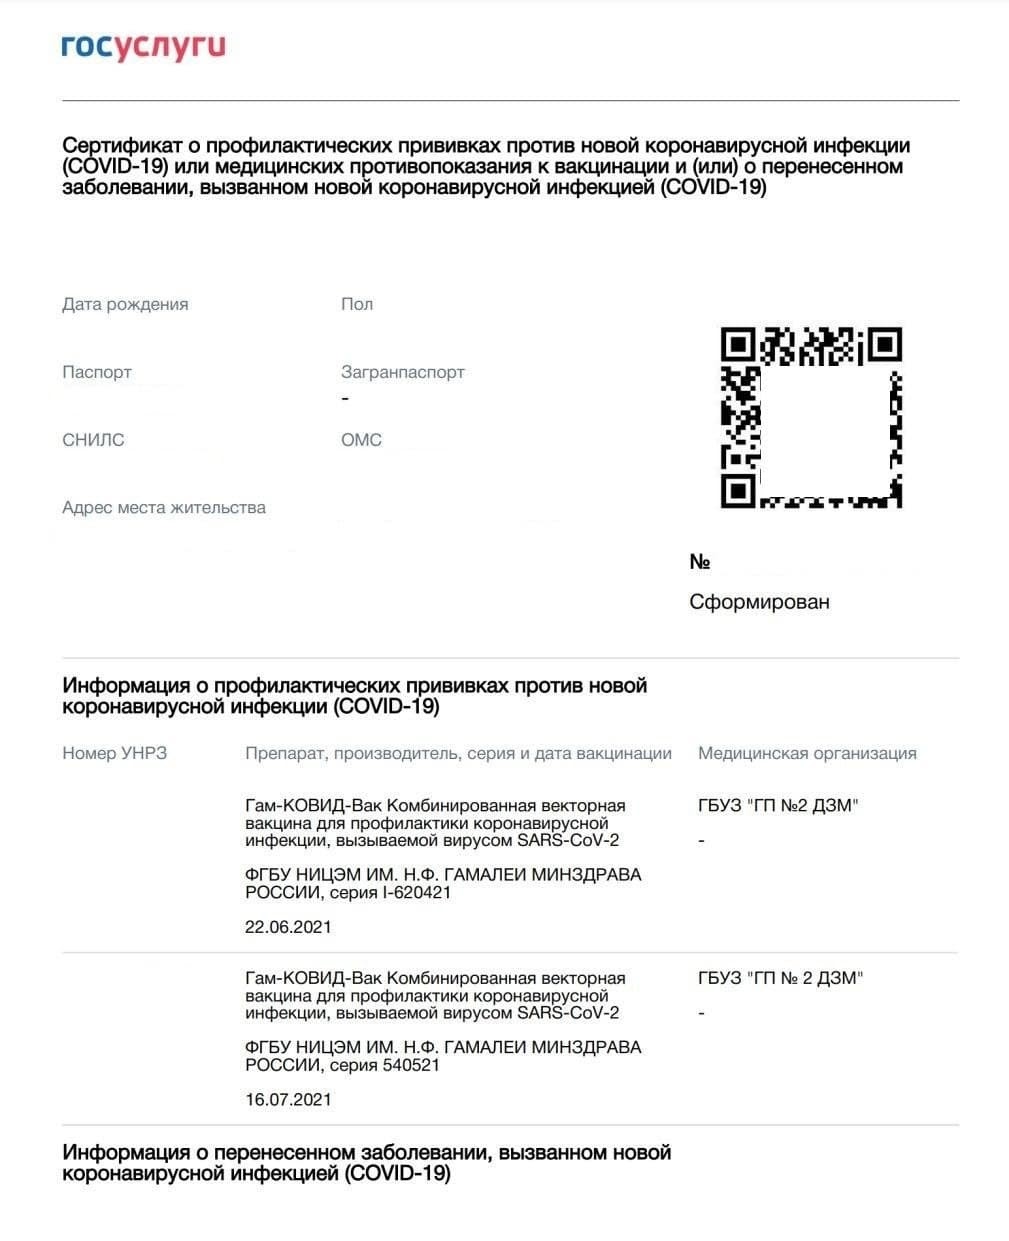 Новые сертификаты о вакцинации от ковида: как выглядят и где их получить